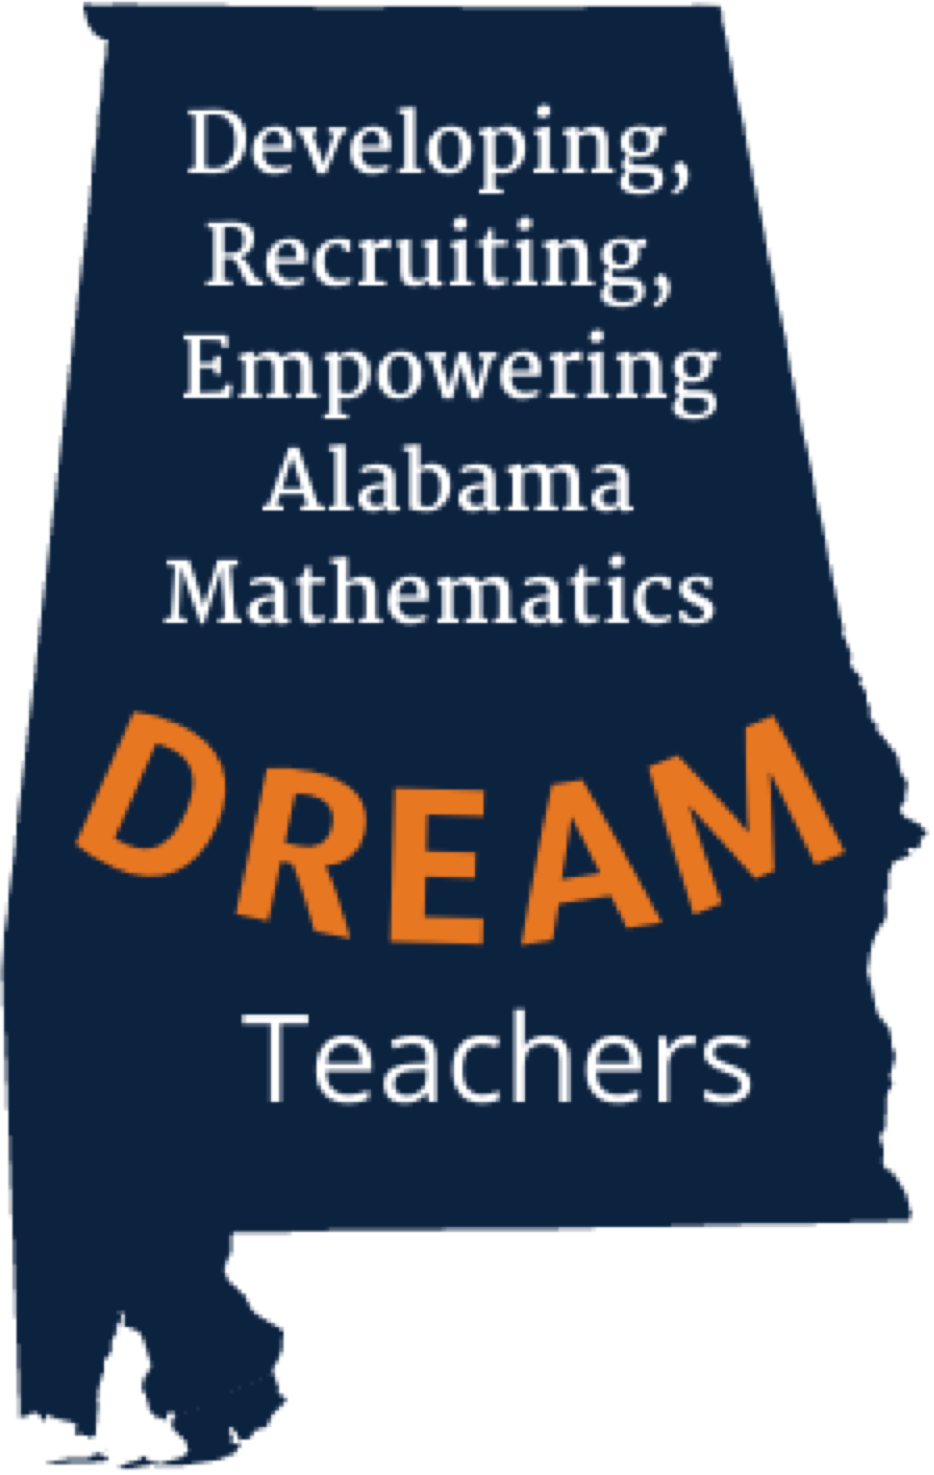 DREAM Math logo